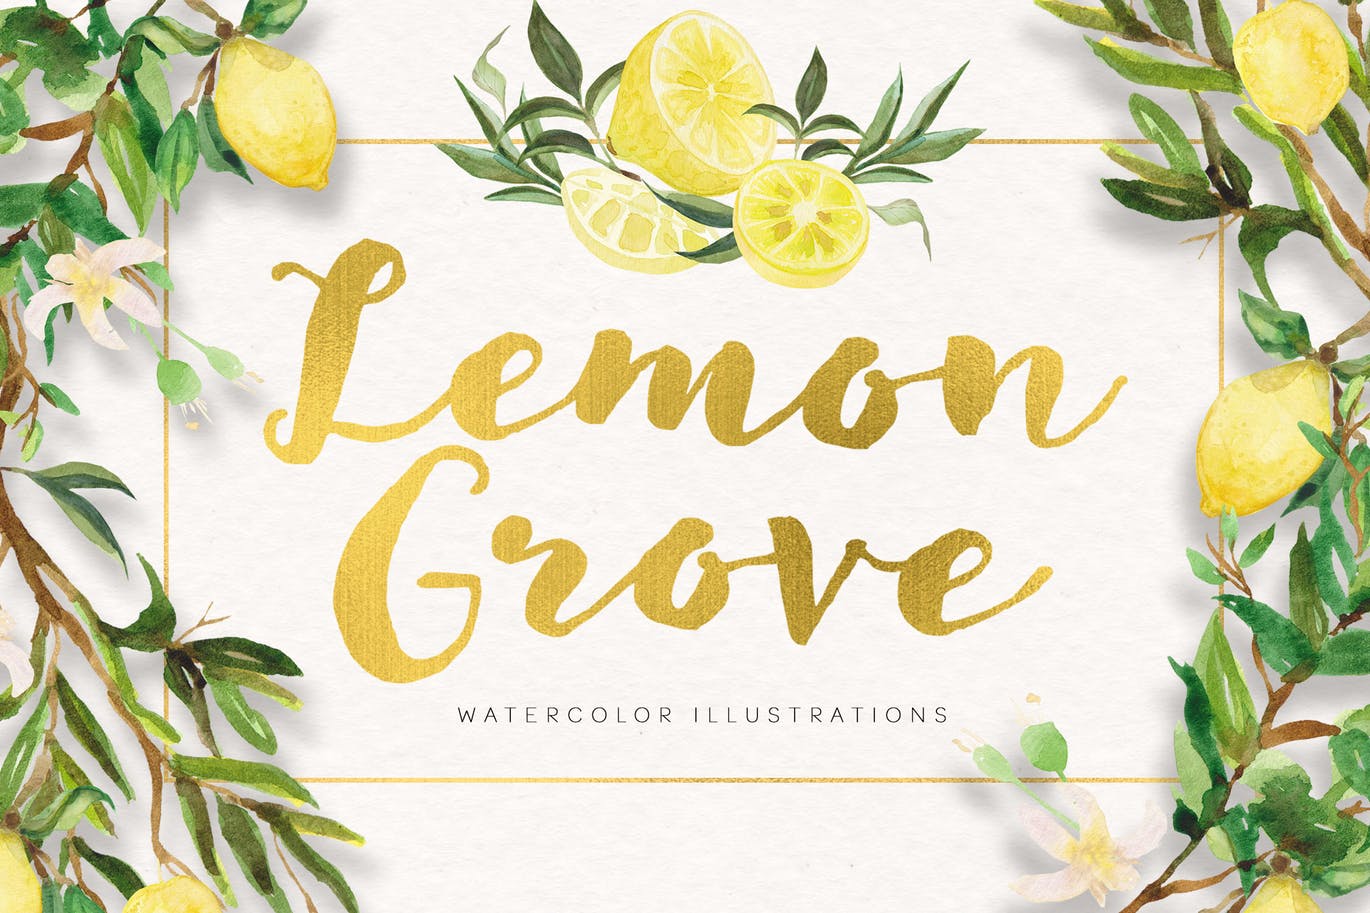 柠檬树水彩手绘矢量插画第一素材精选素材 Lemon Grove Watercolor Illustrations插图